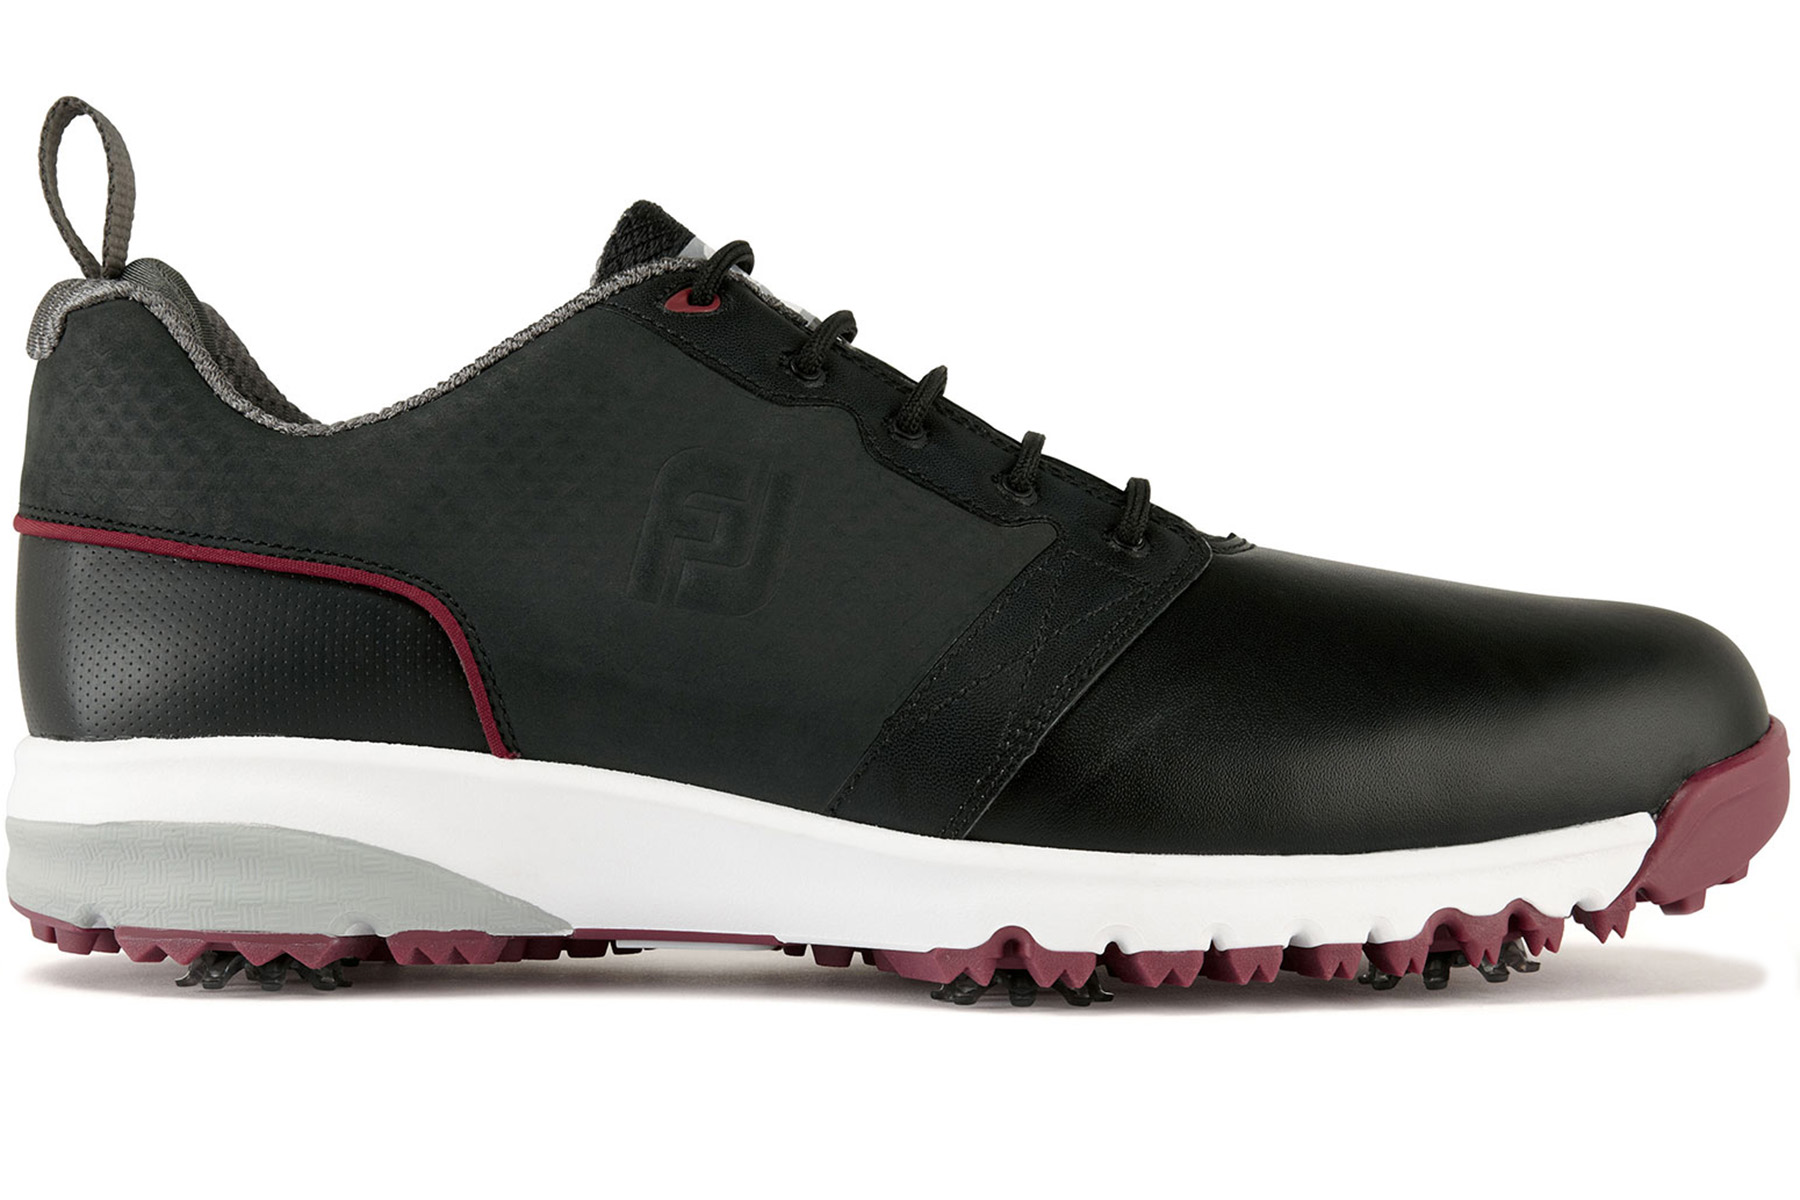 FootJoy Contour Fit Shoes | Online Golf